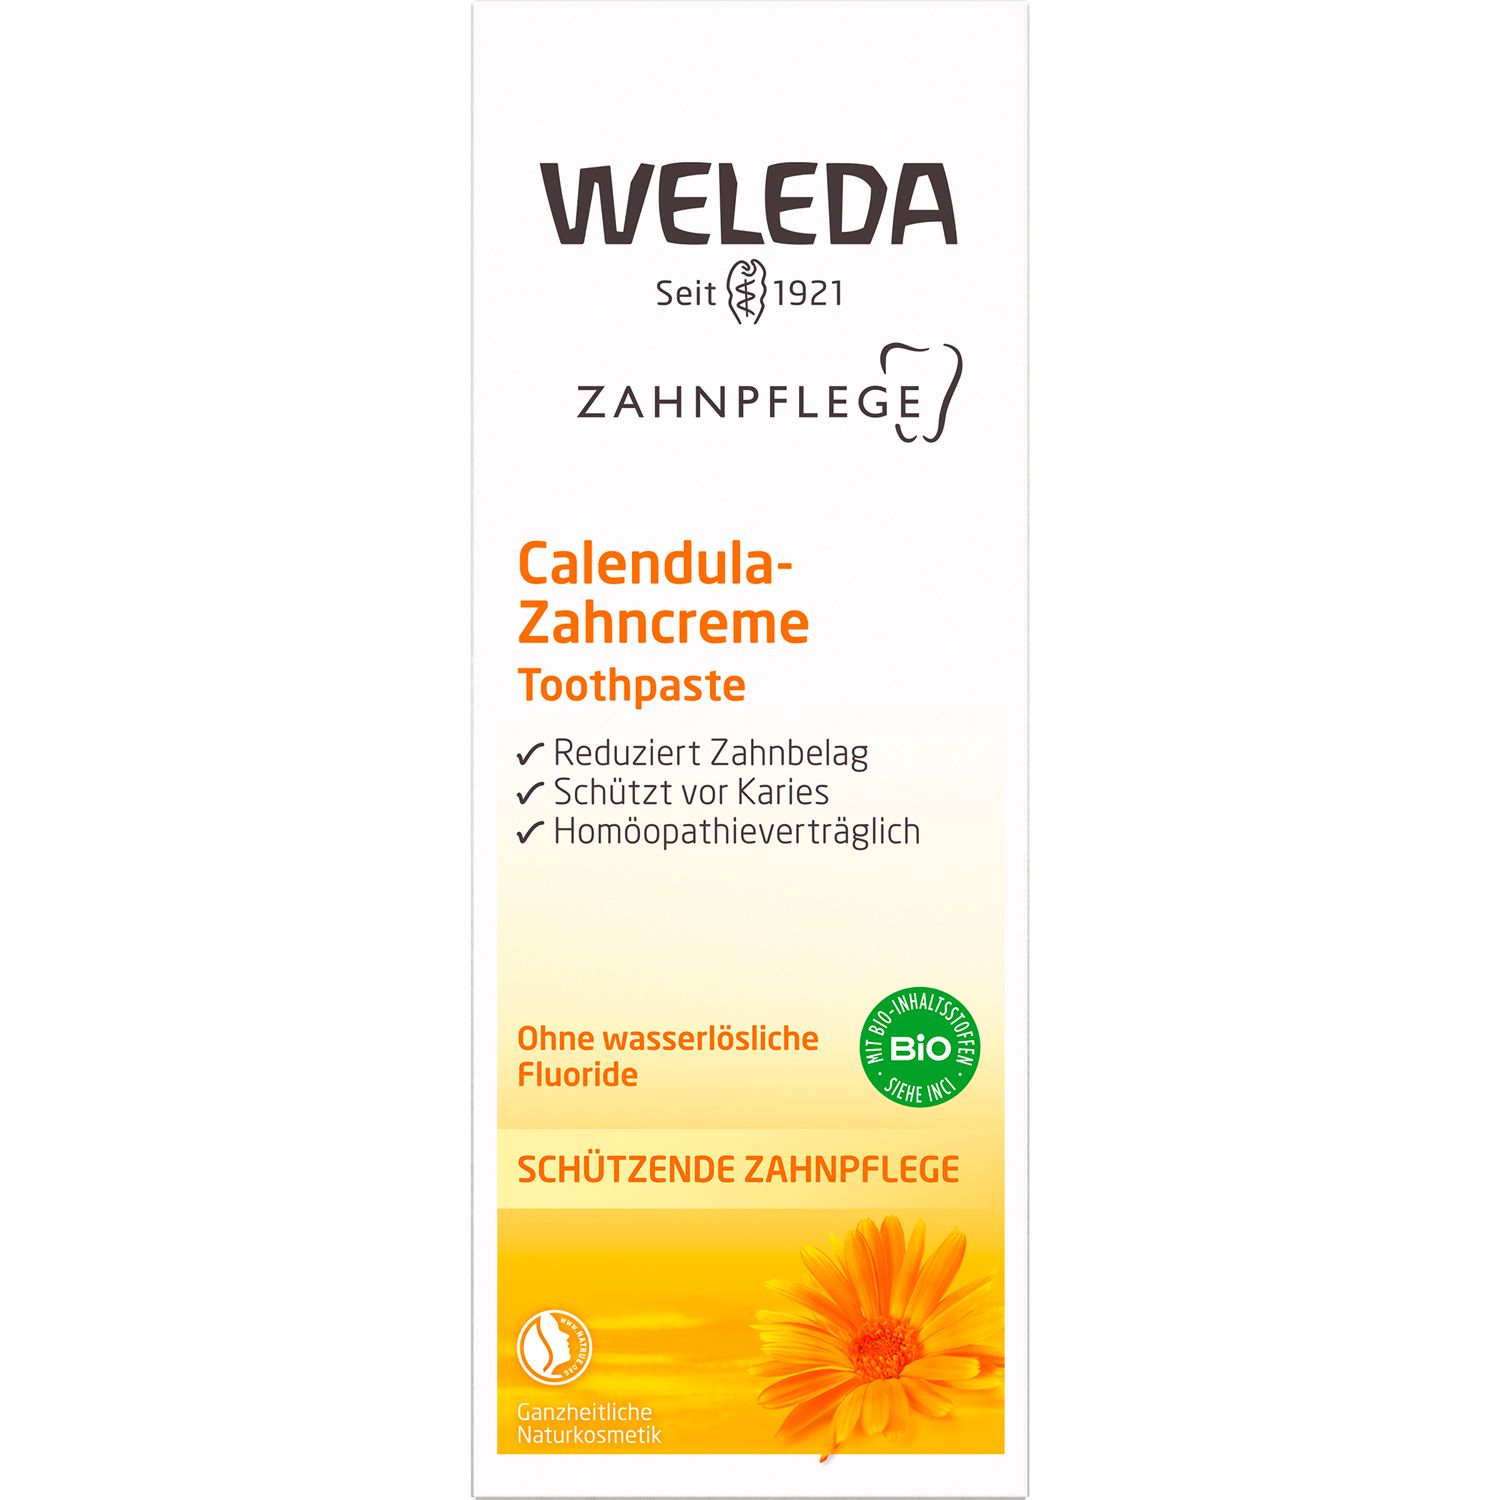 Weleda Calendula-Zahncreme - mit mineralischem Putzkörper reinigt die Zähne sanft & gründlich